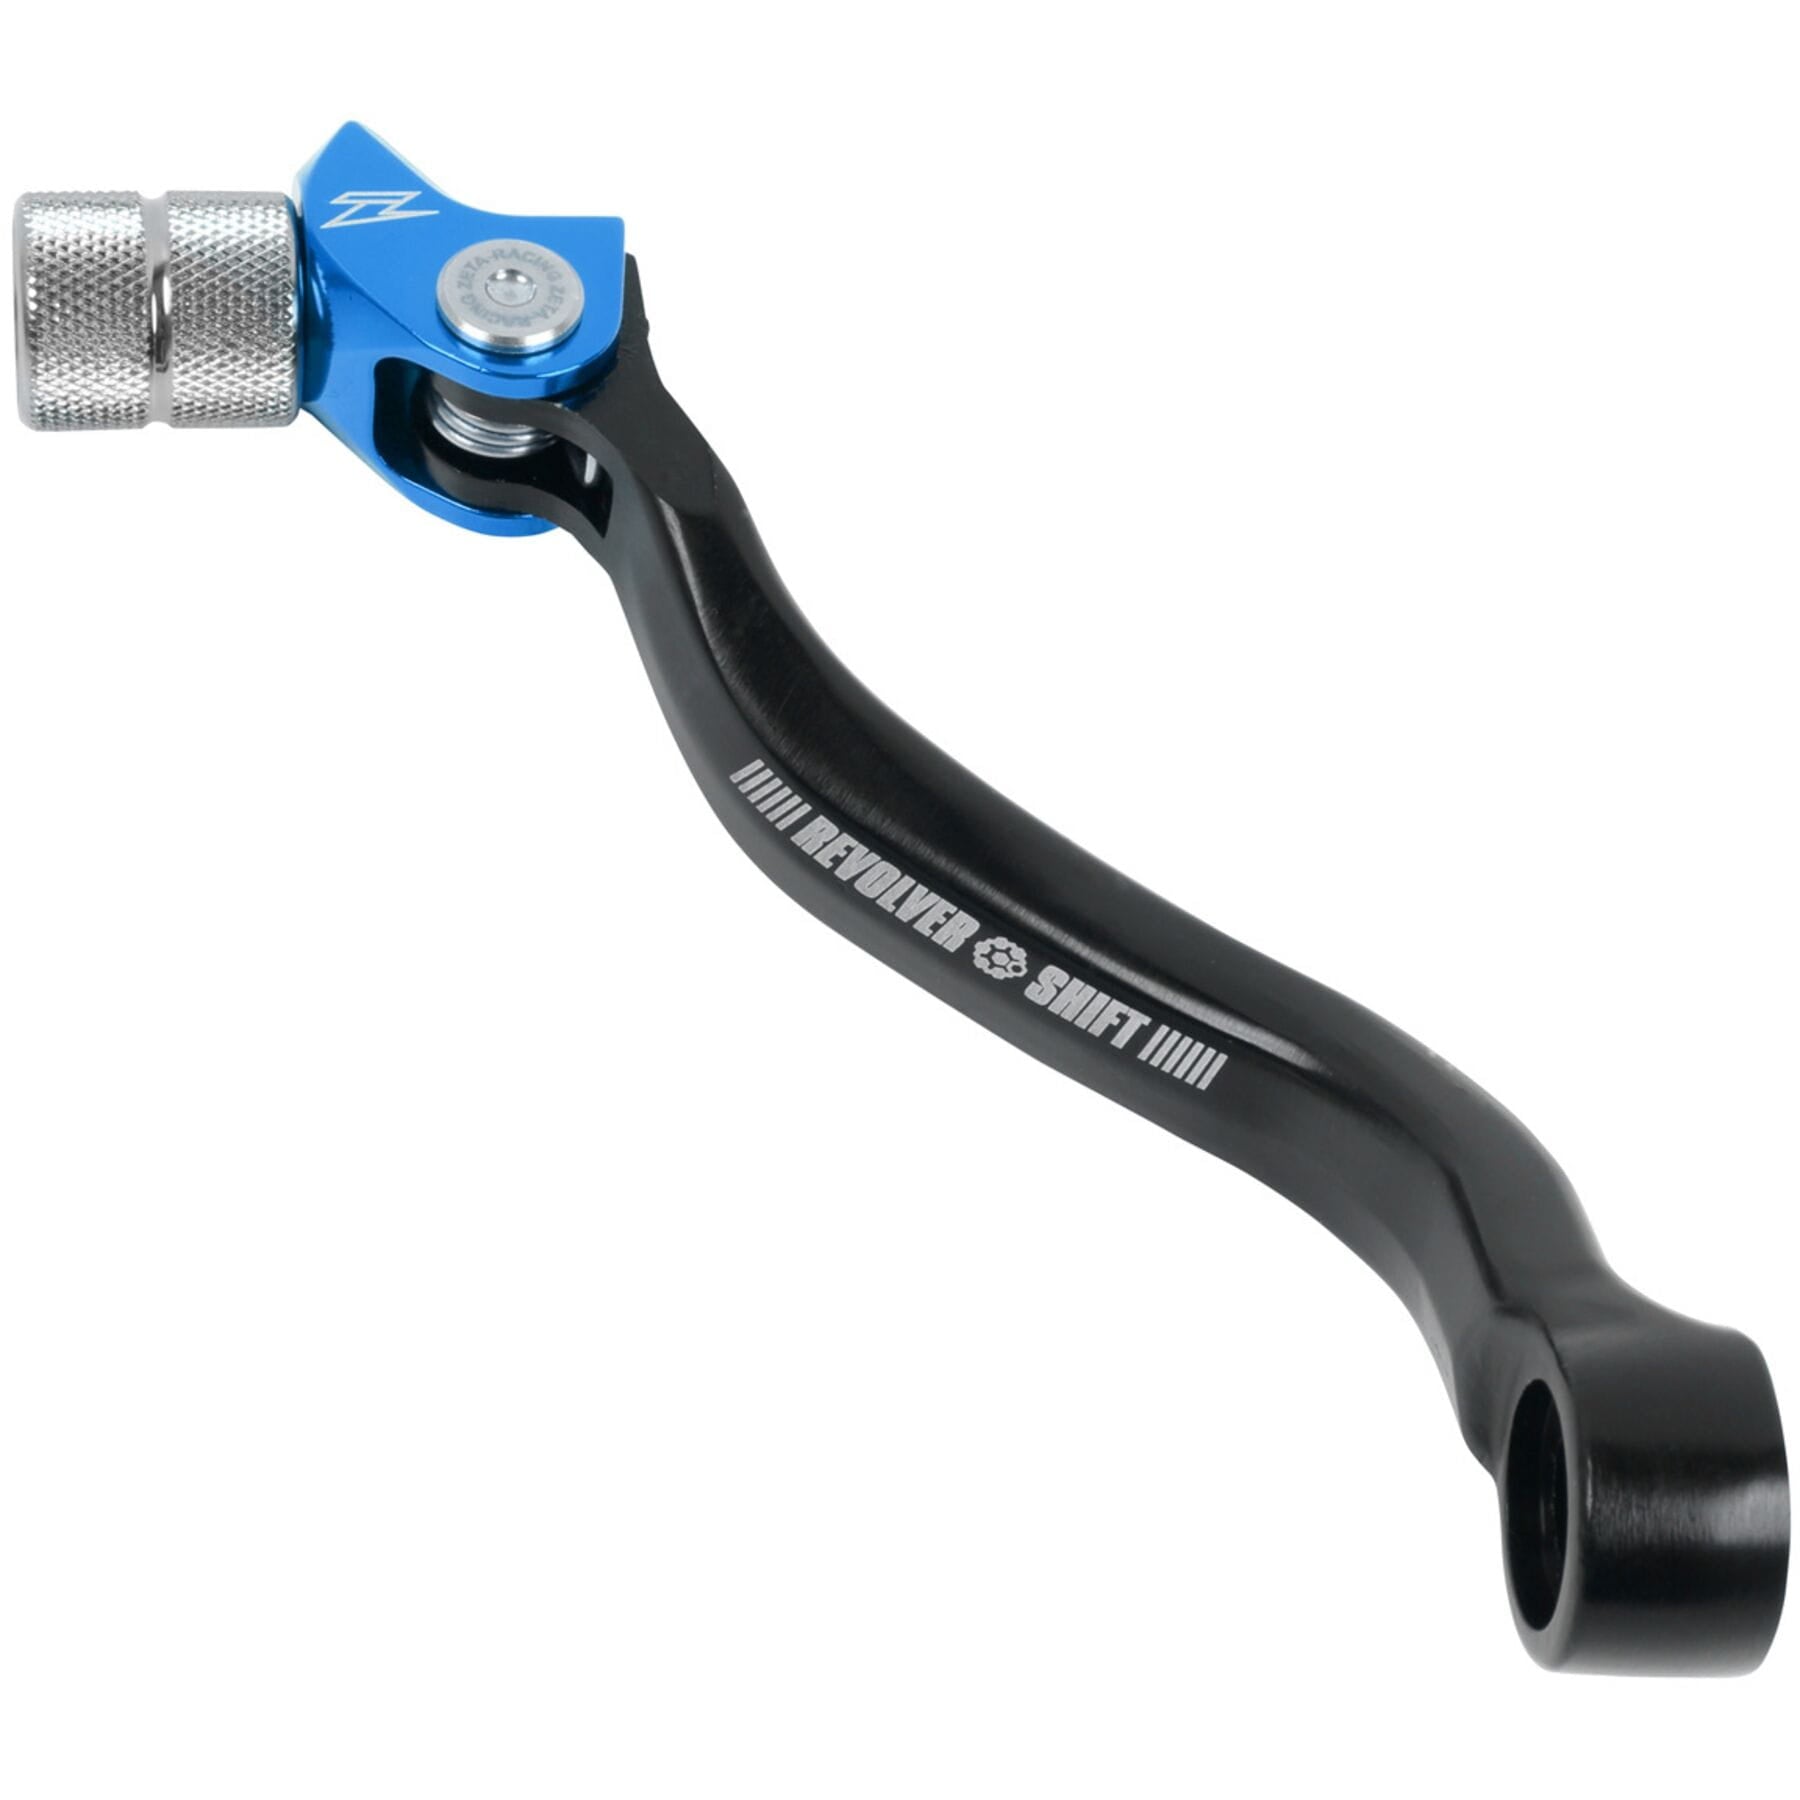 Revolver adjustable shift lever for Husky FC250/350 2014-2021, FE 250/350 2017-2021 in blue